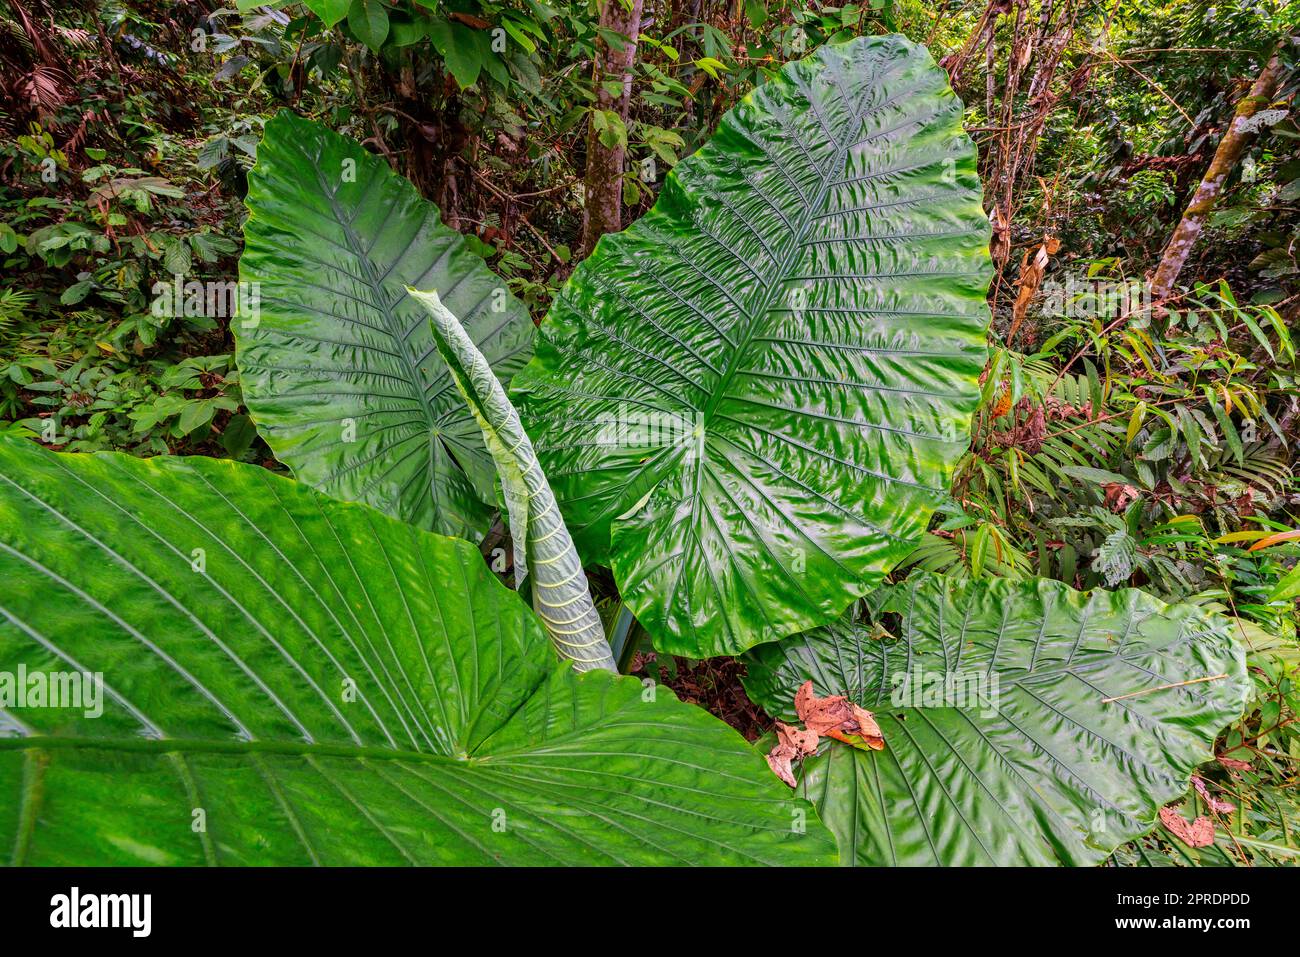 Vista dell'Alocasia Macrorrhizos (taro gigante), la più grande foglia indivisa del mondo. Foresta pluviale tropicale, Sabah, Borneo, Malesia. Foto Stock